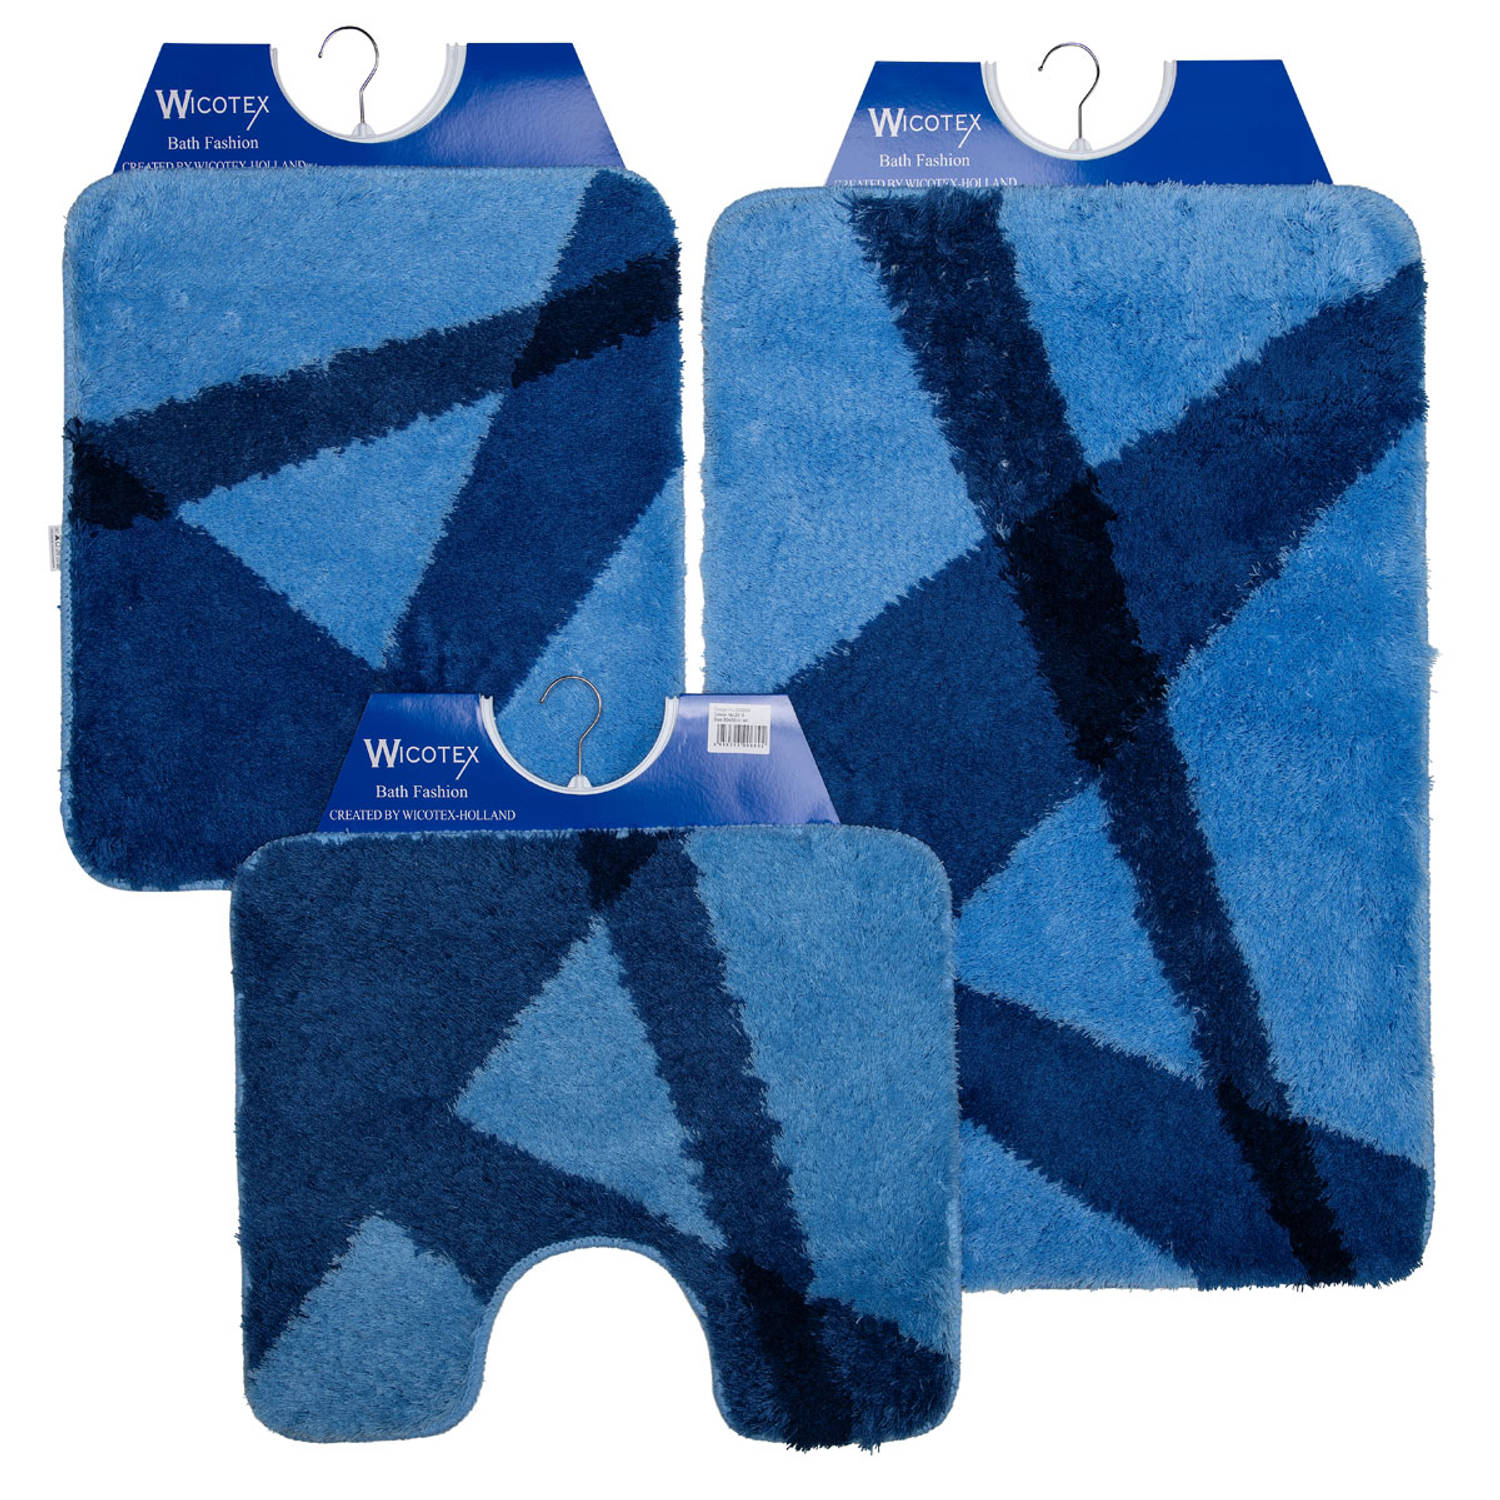 Wicotex-Badmatset-Badmat-Toiletmat-Bidetmat blauw Blokker